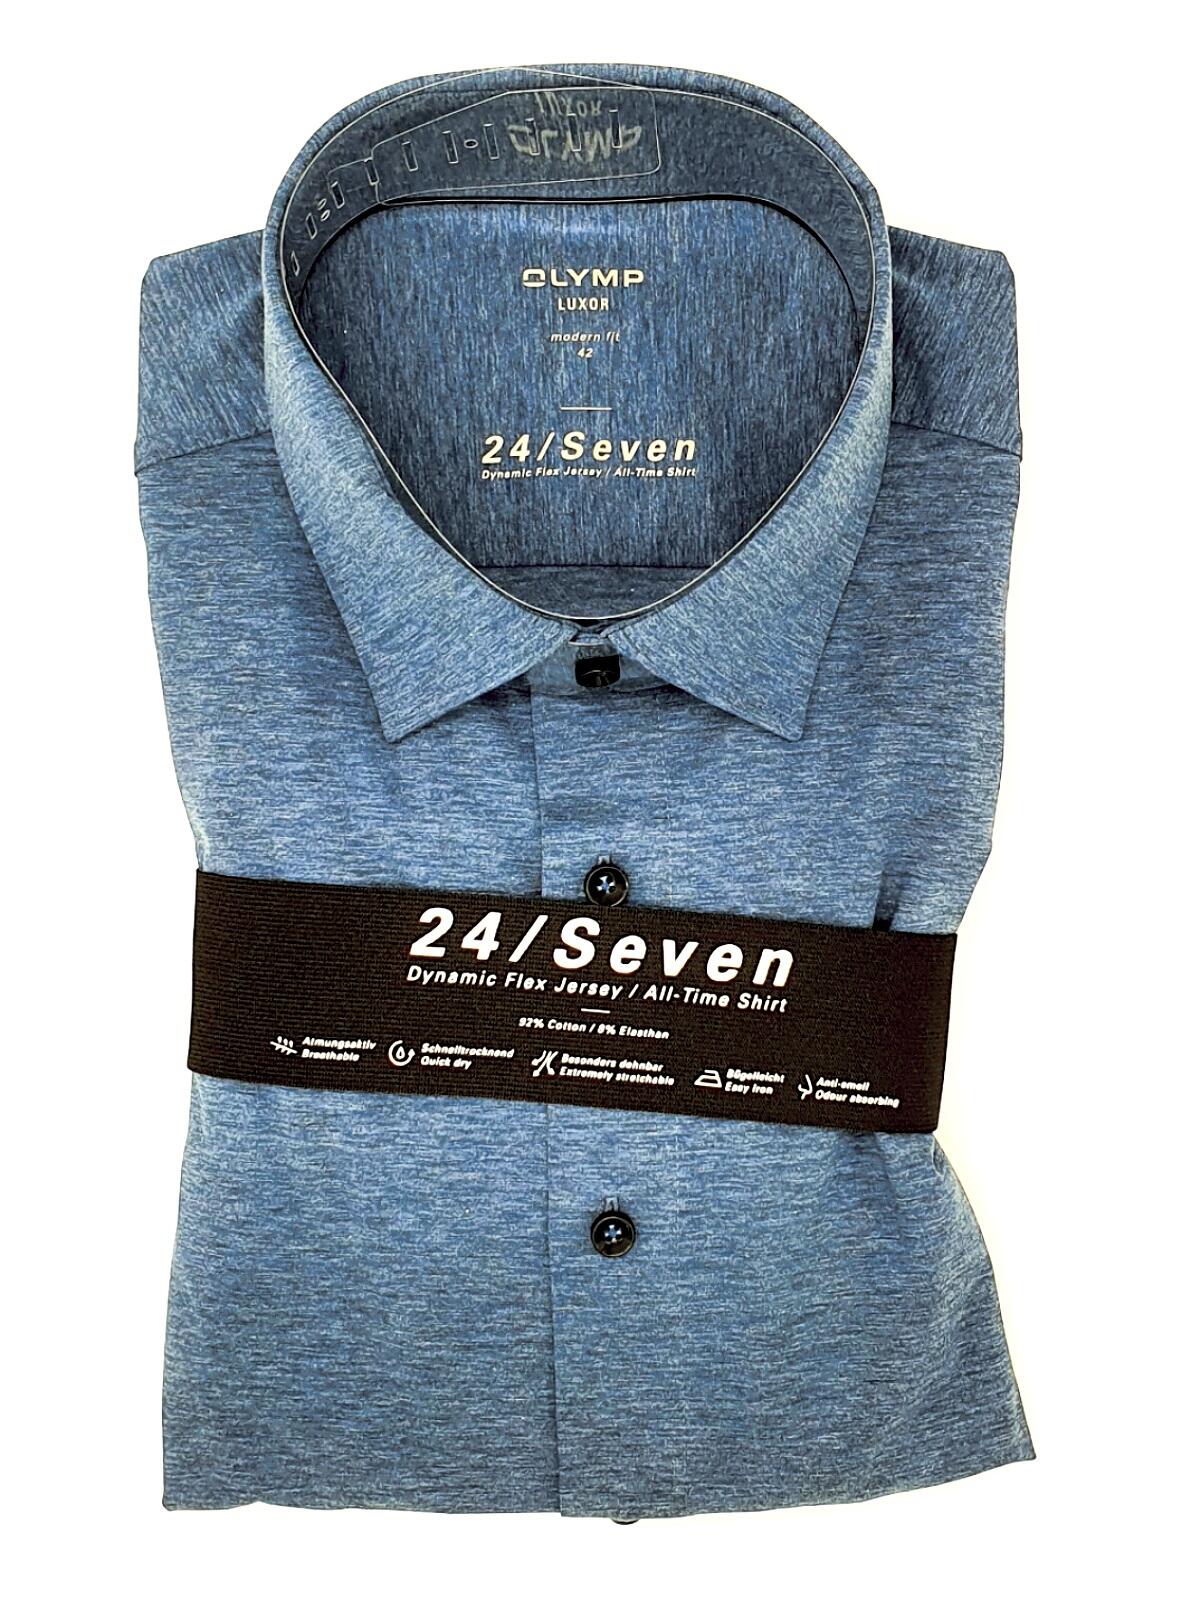 Olymp Olymp Hemd modern fit langarm jeans blau 24/Seven Dynamic Flex  Jersey, All-Time-Shirt bequem wie ein T-Shirt, 1202 64 13 erhältlich bei  Mode Schönleitner in Gmunden | Gmunden stilvoll shoppen